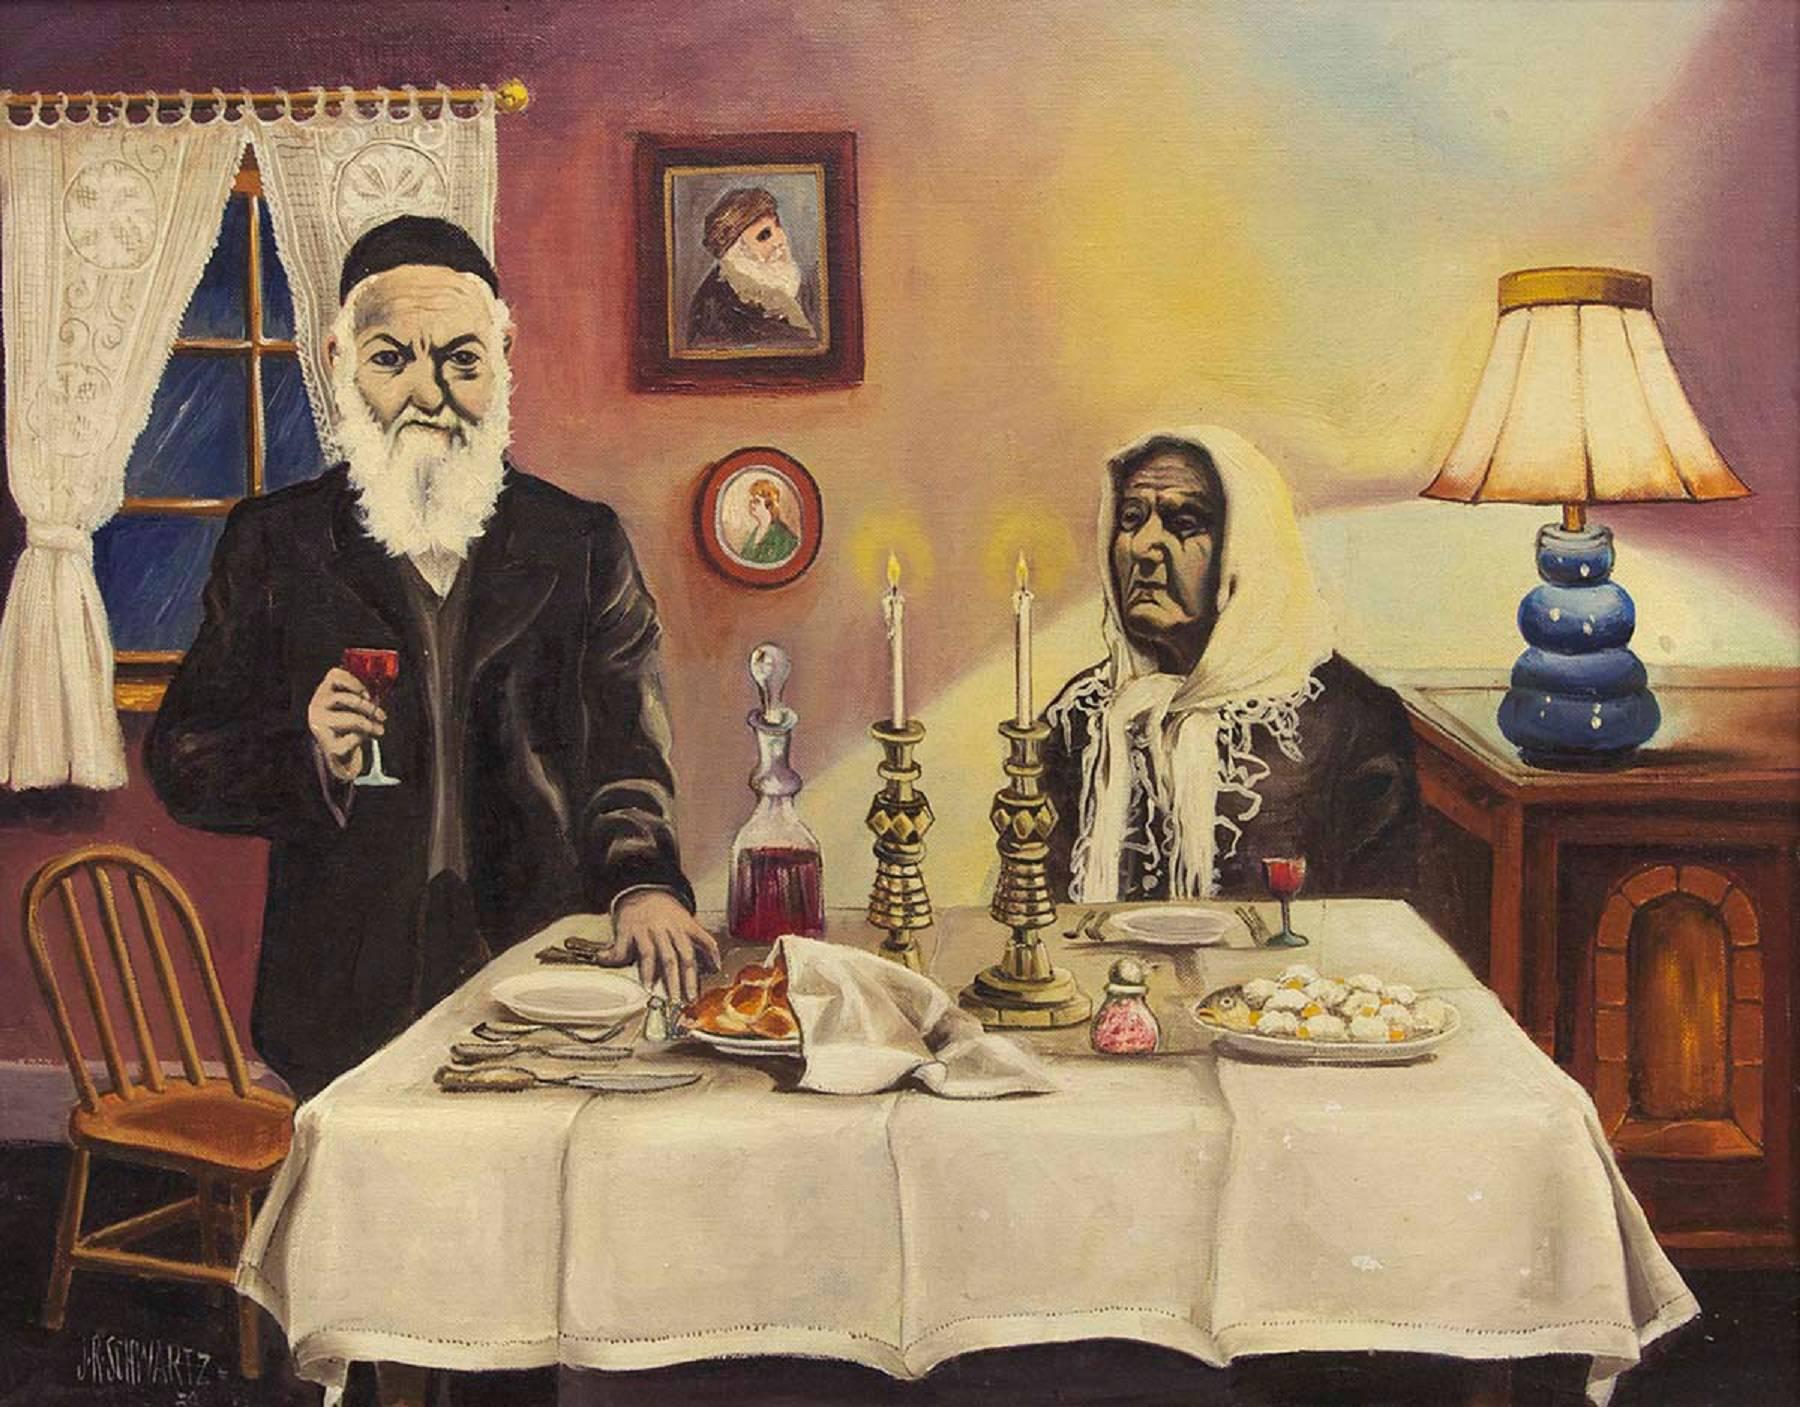 Old World Shabbat Dinner - Painting by J. R. Schwartz